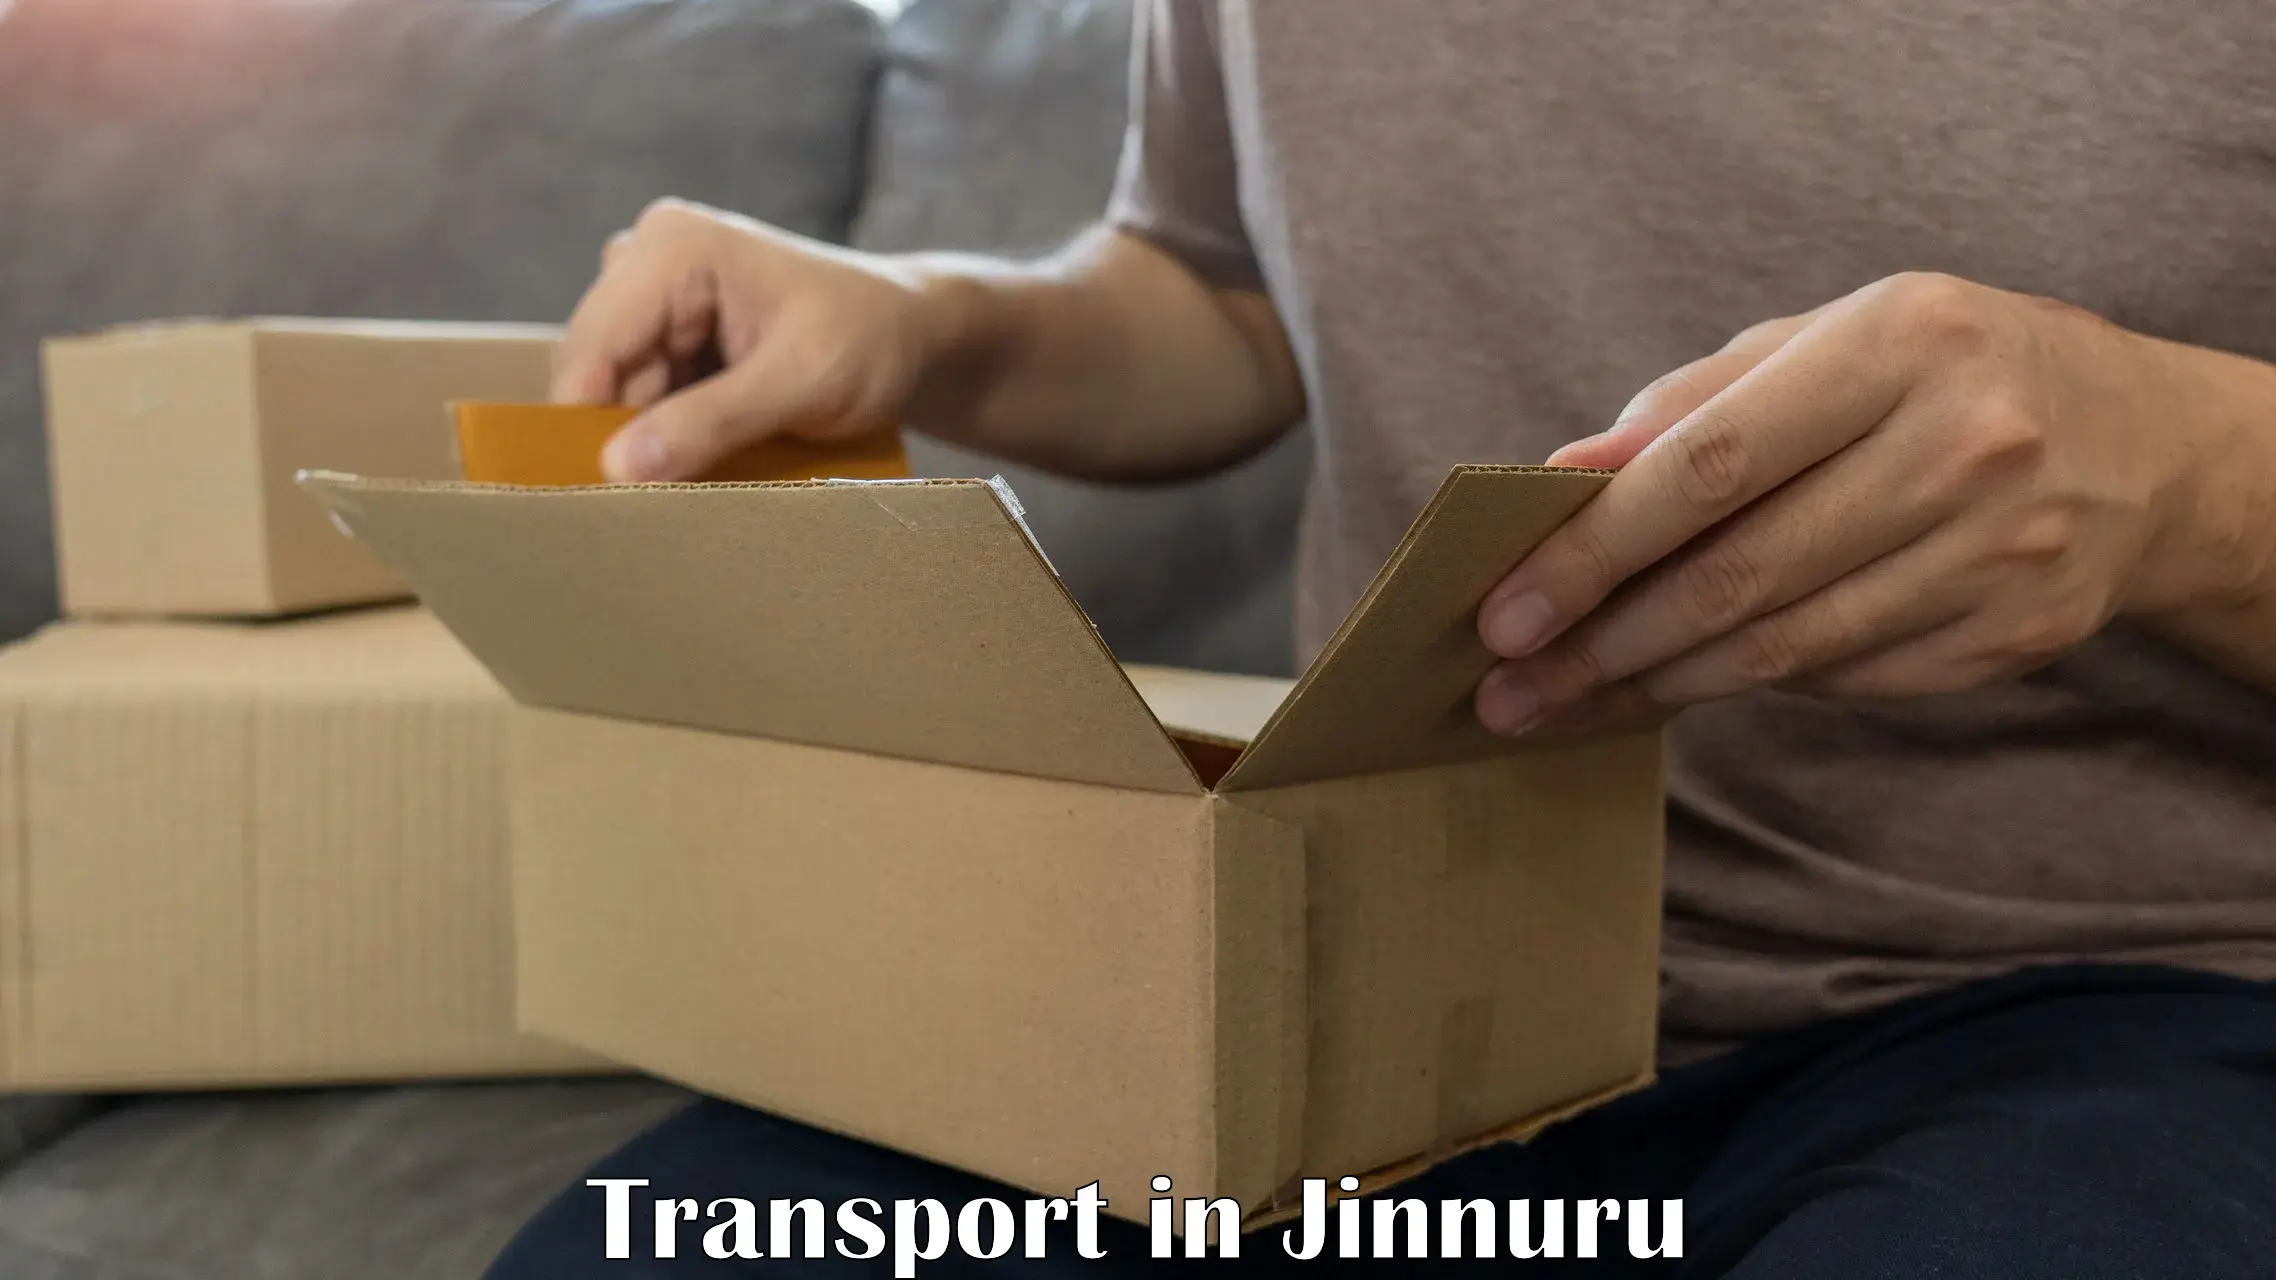 Daily transport service in Jinnuru